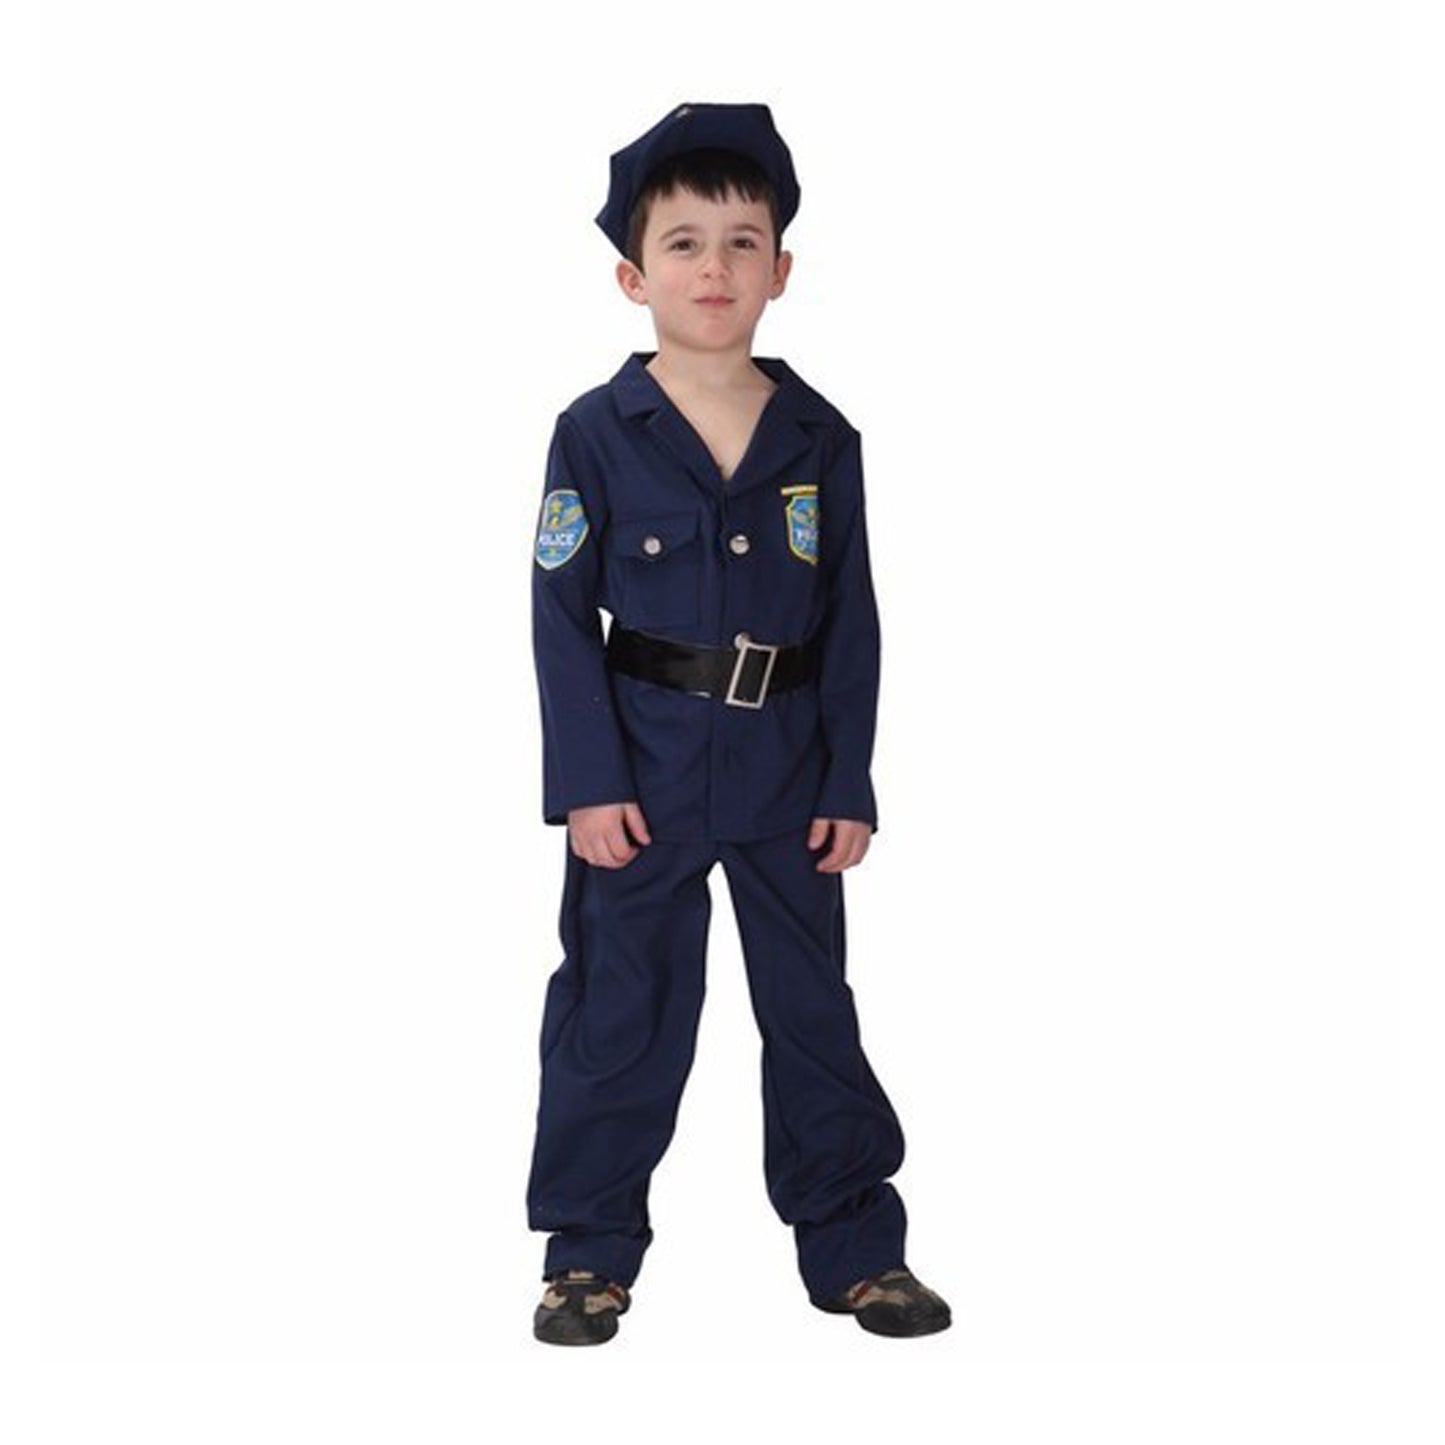 Little Police Officer